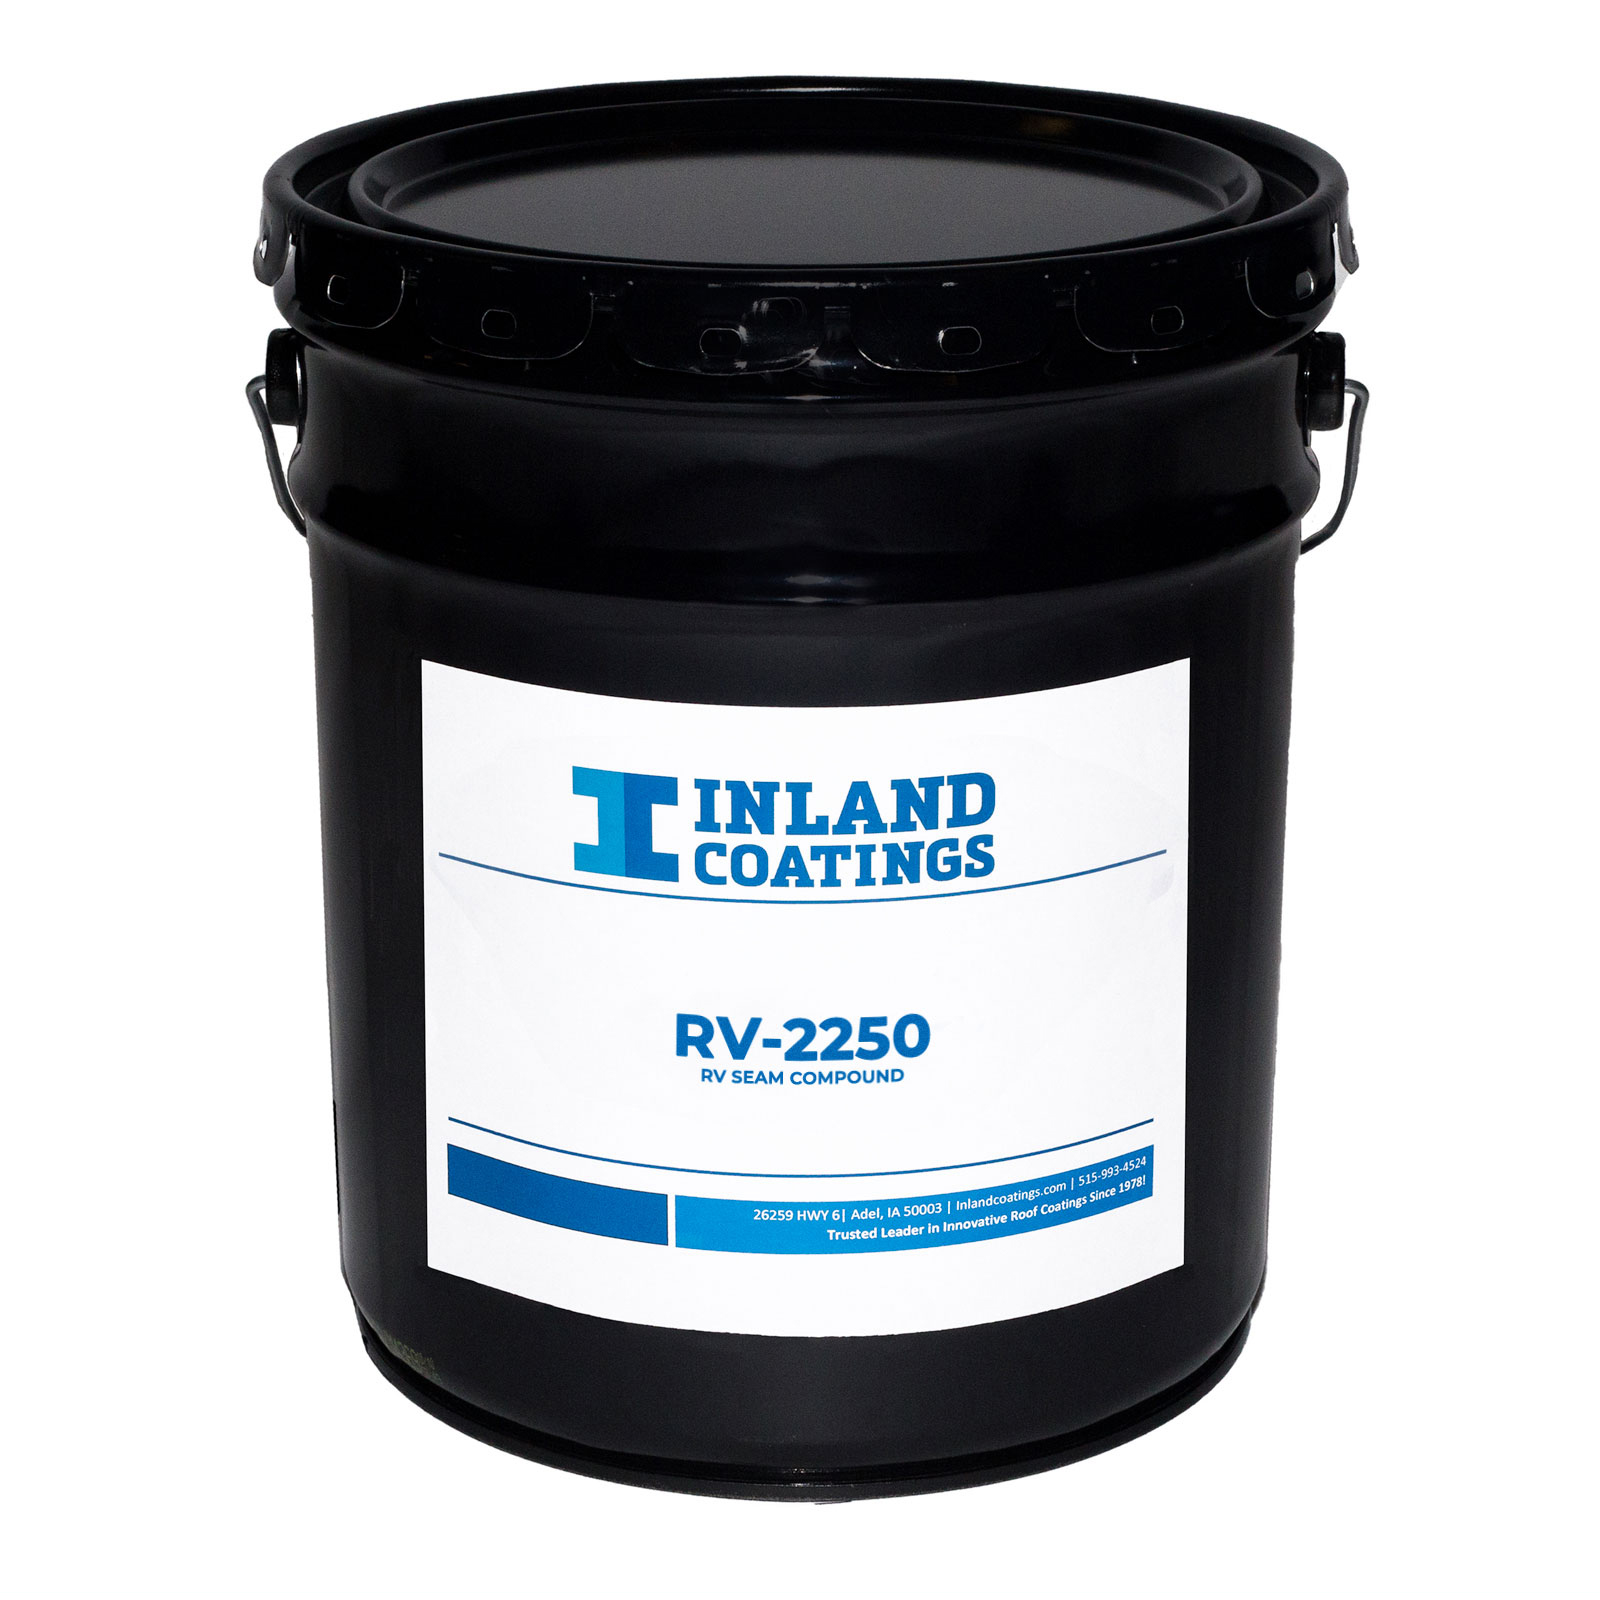 A bucket of Inland's RV-2250 RV Seam Compound